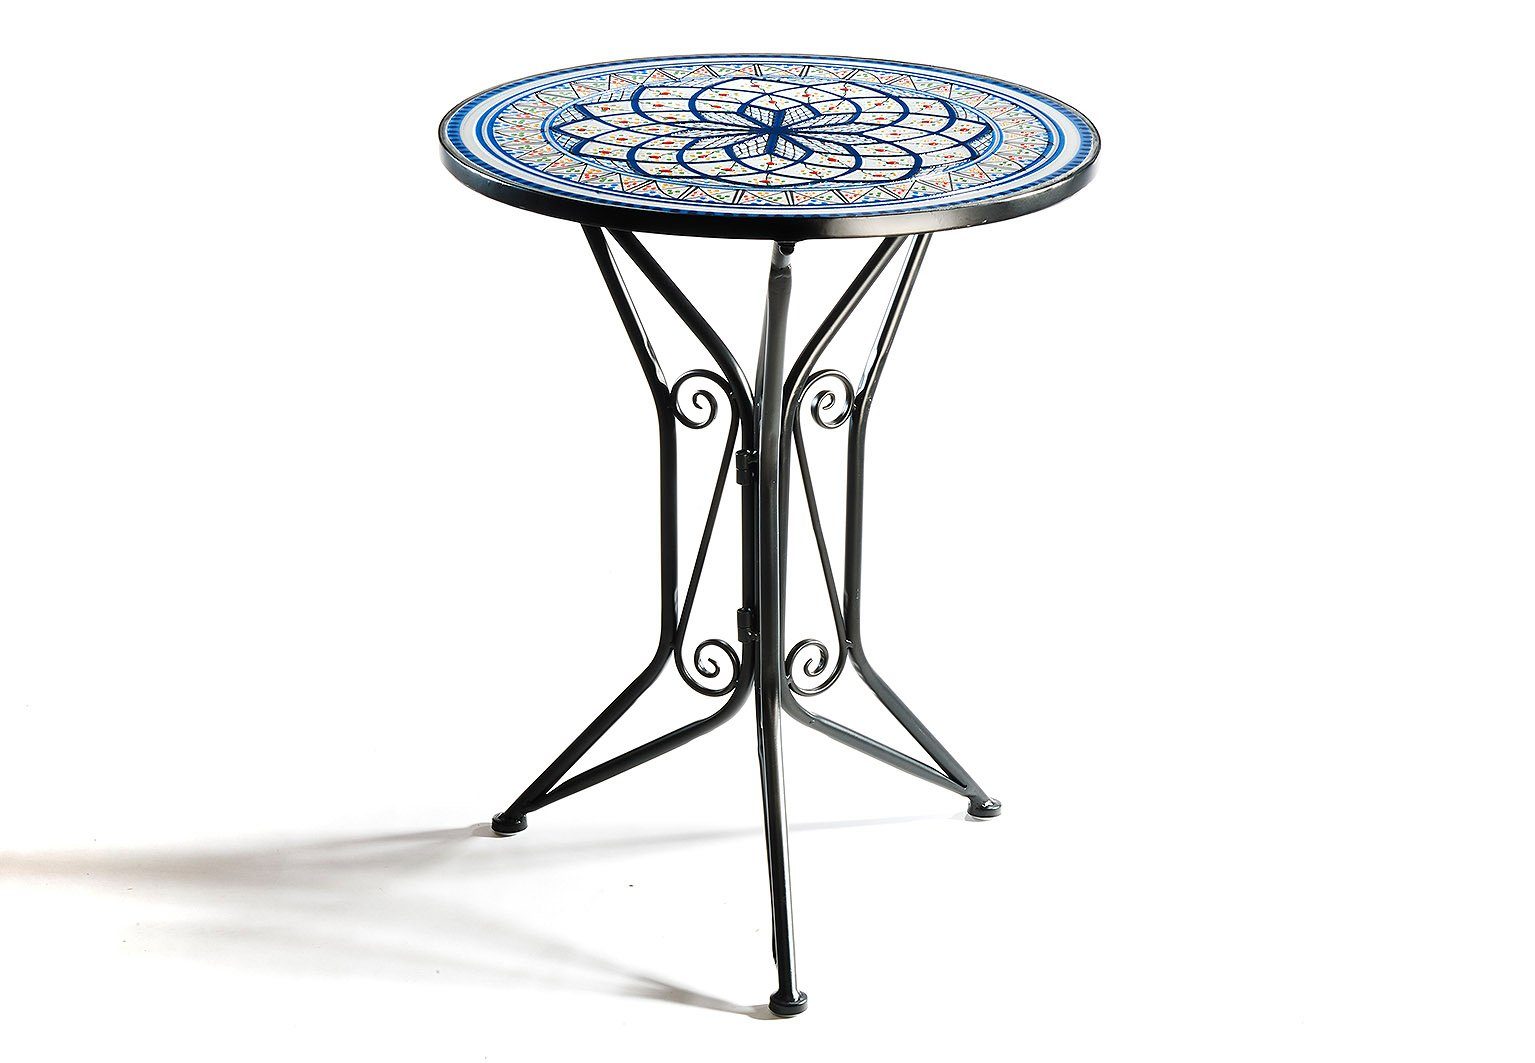 Kobolo Gartenmöbelset »Metalltisch mit Mosaikoptik weiß blau D 55 cm«,  (1-tlg) online kaufen | OTTO